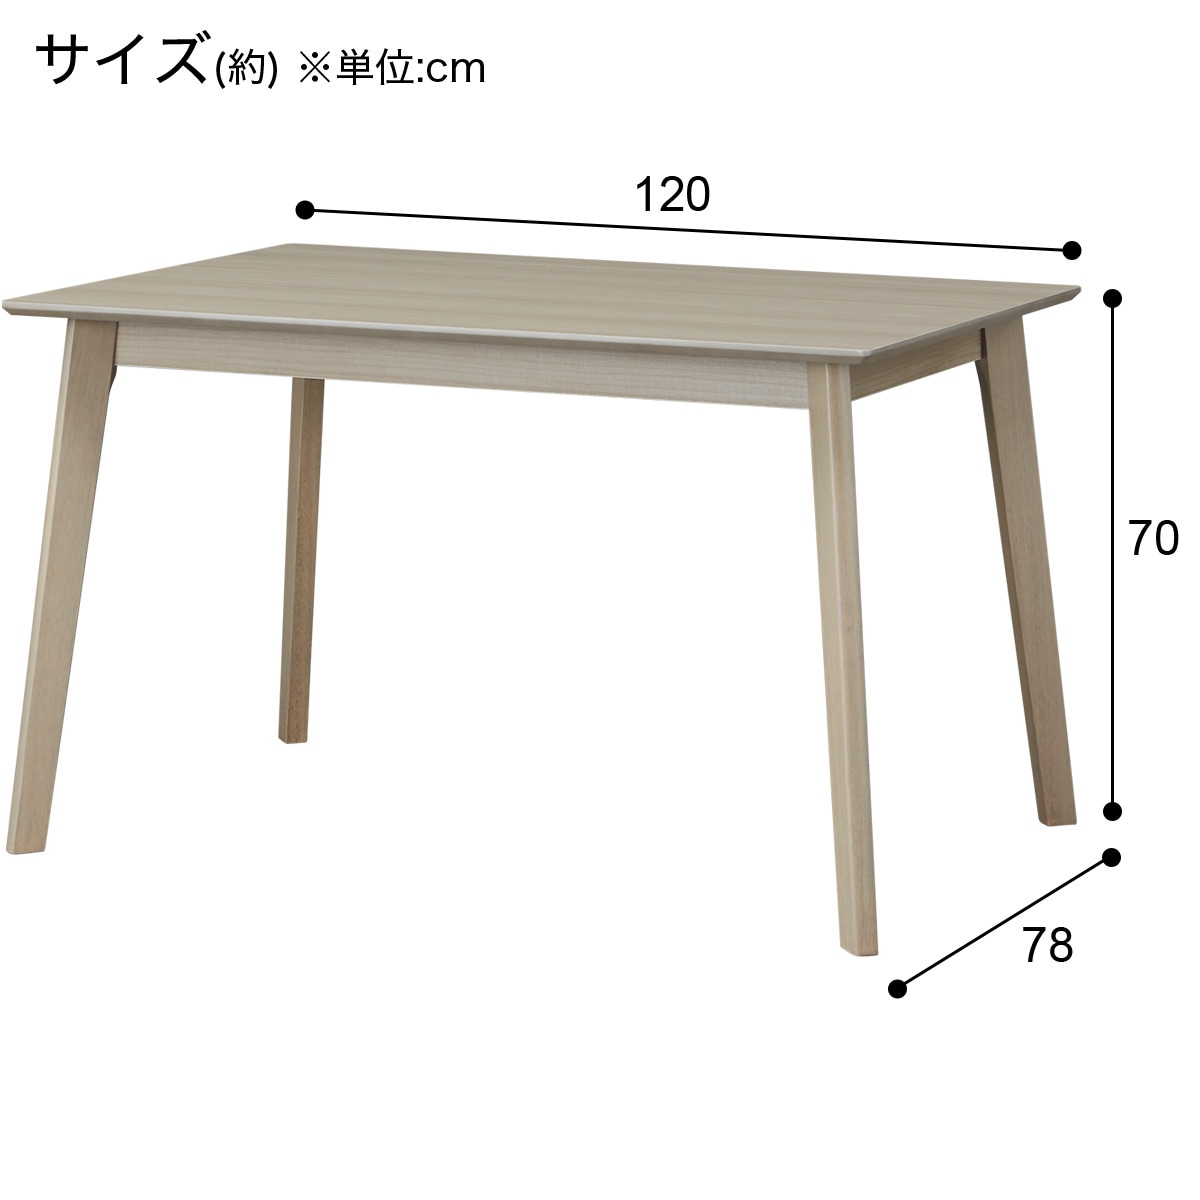 ダイニングテーブル(4LEG GY 120 SJ601)通販 | ニトリネット【公式 